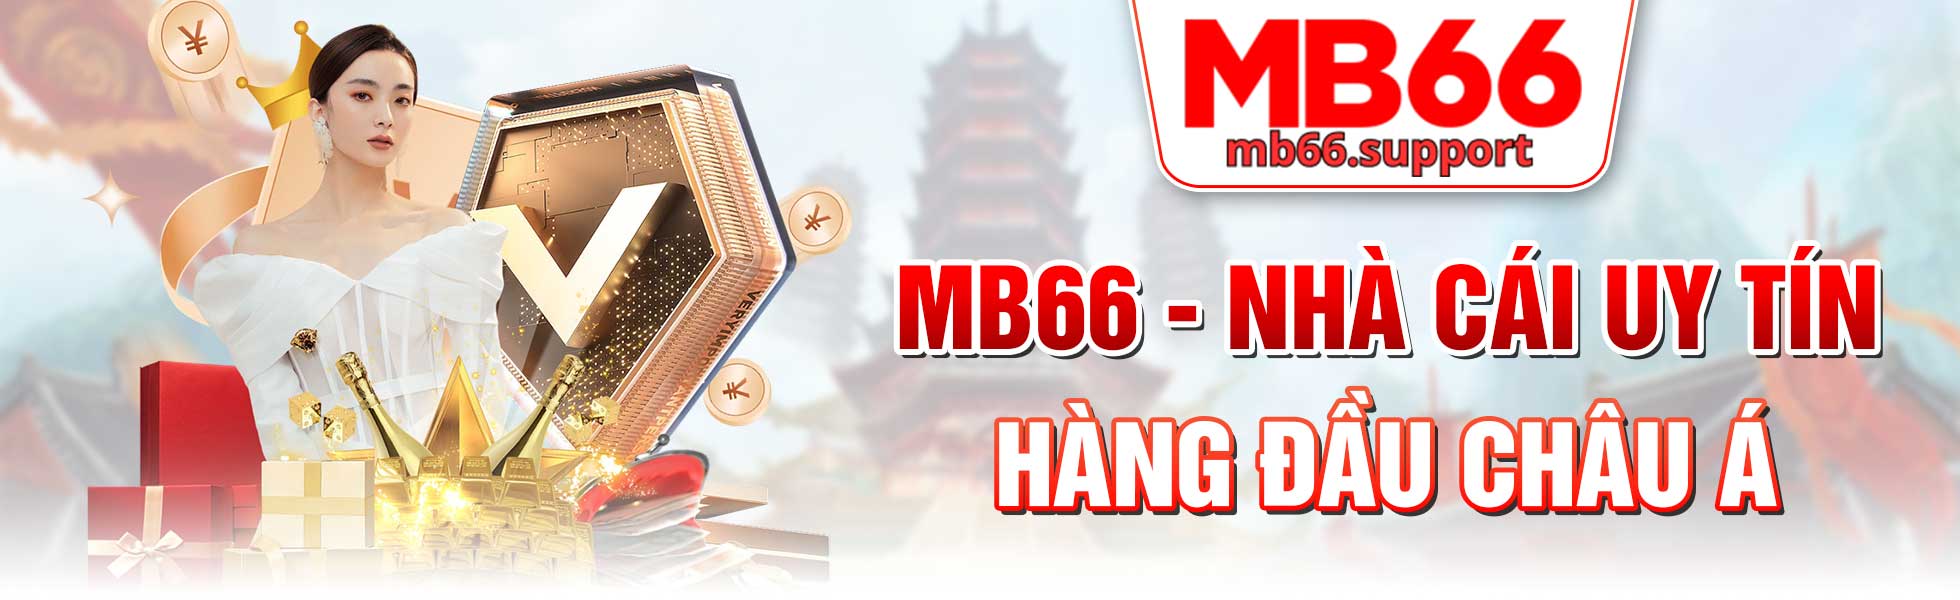 Mb66 nhà cái uy tín hàng đầu châu á